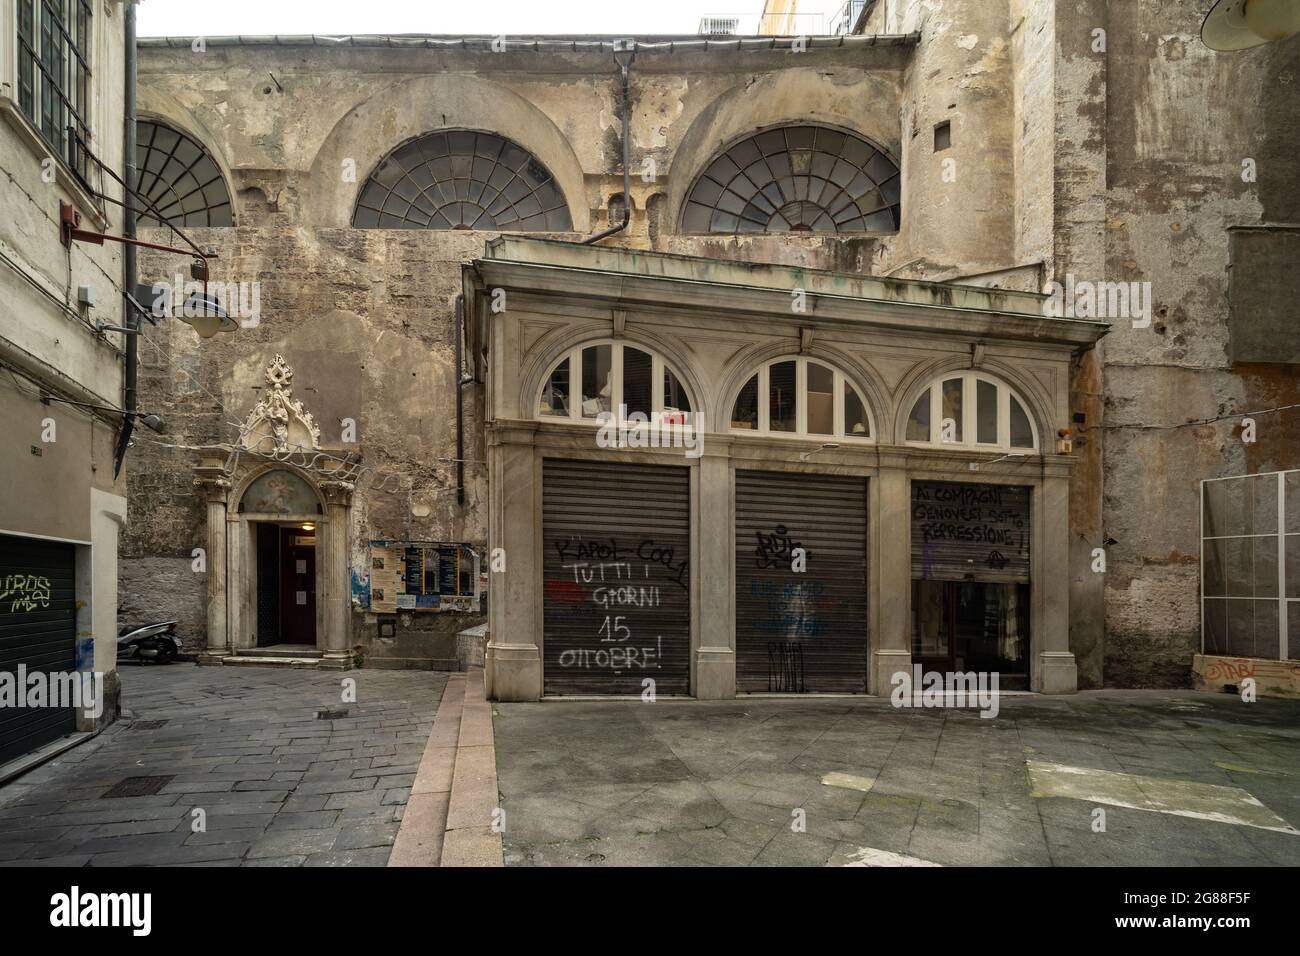 Genoa, Italy, historic centre Stock Photo